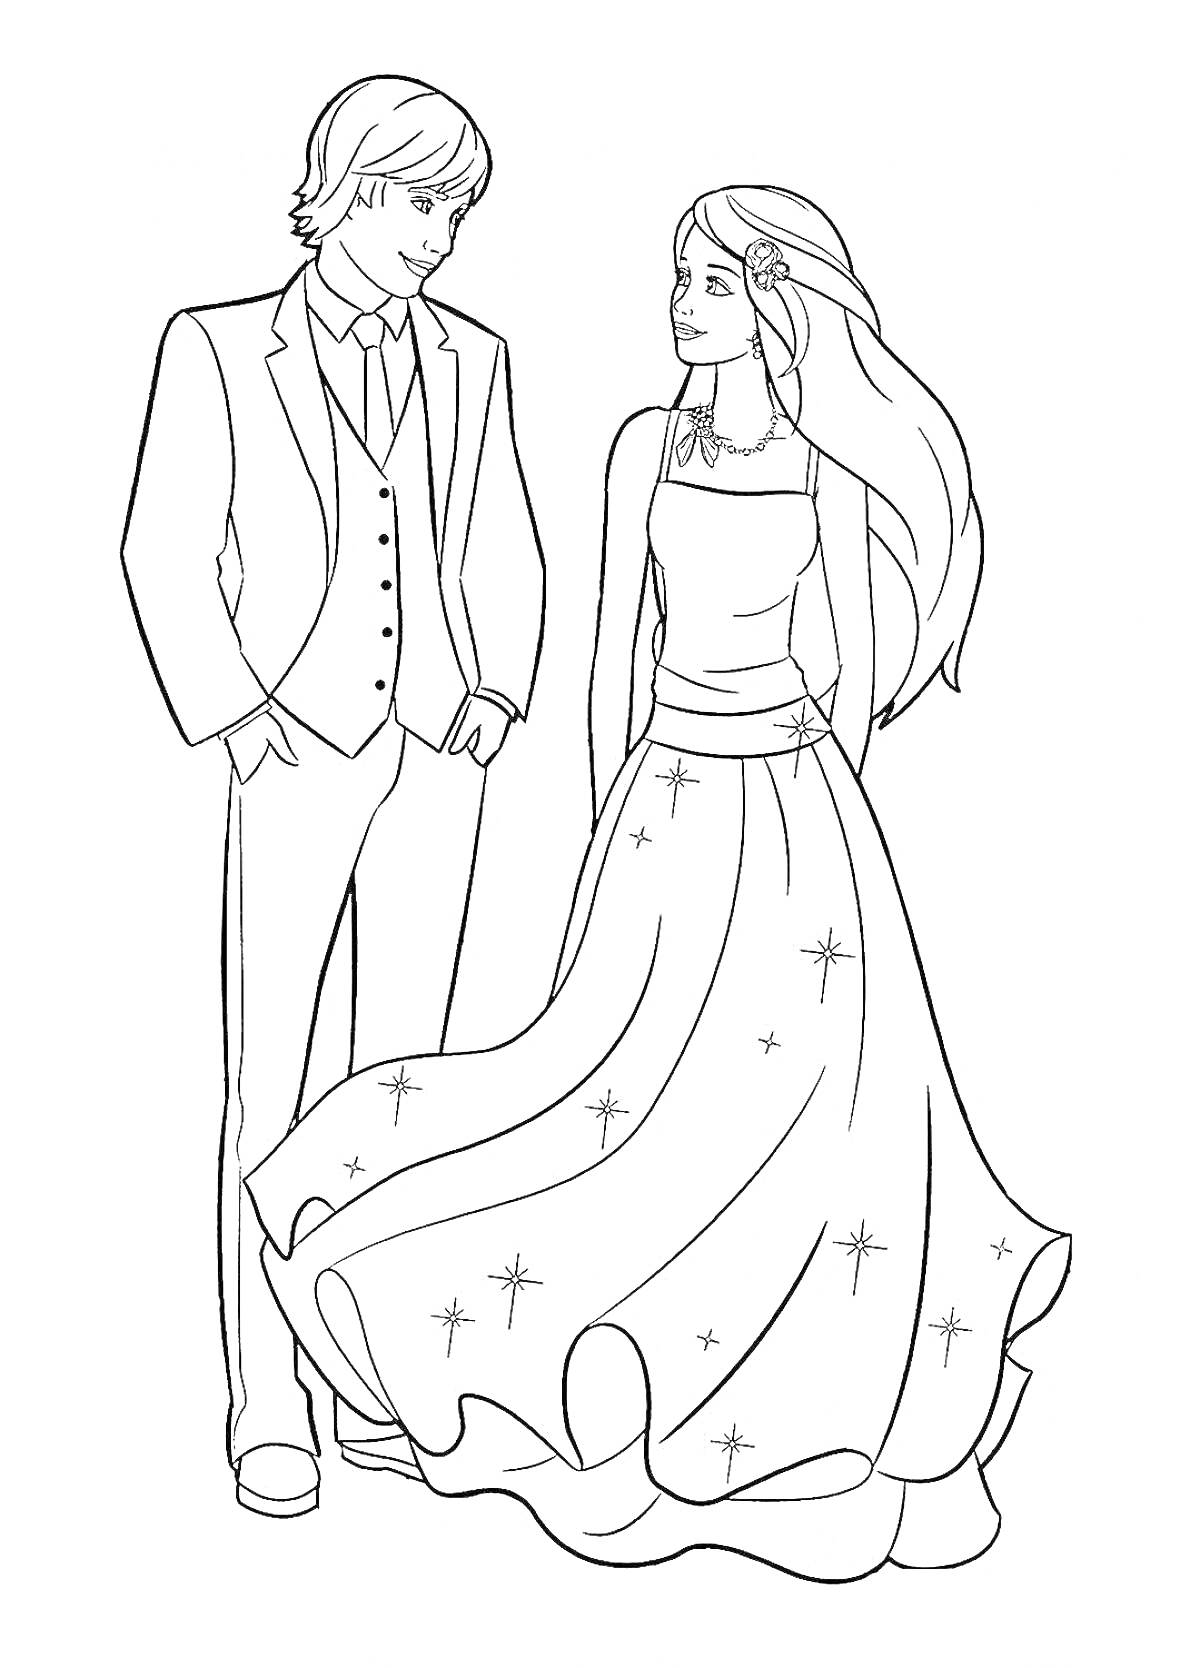 Раскраска Жена и муж в нарядной одежде: муж в костюме, жена в платье